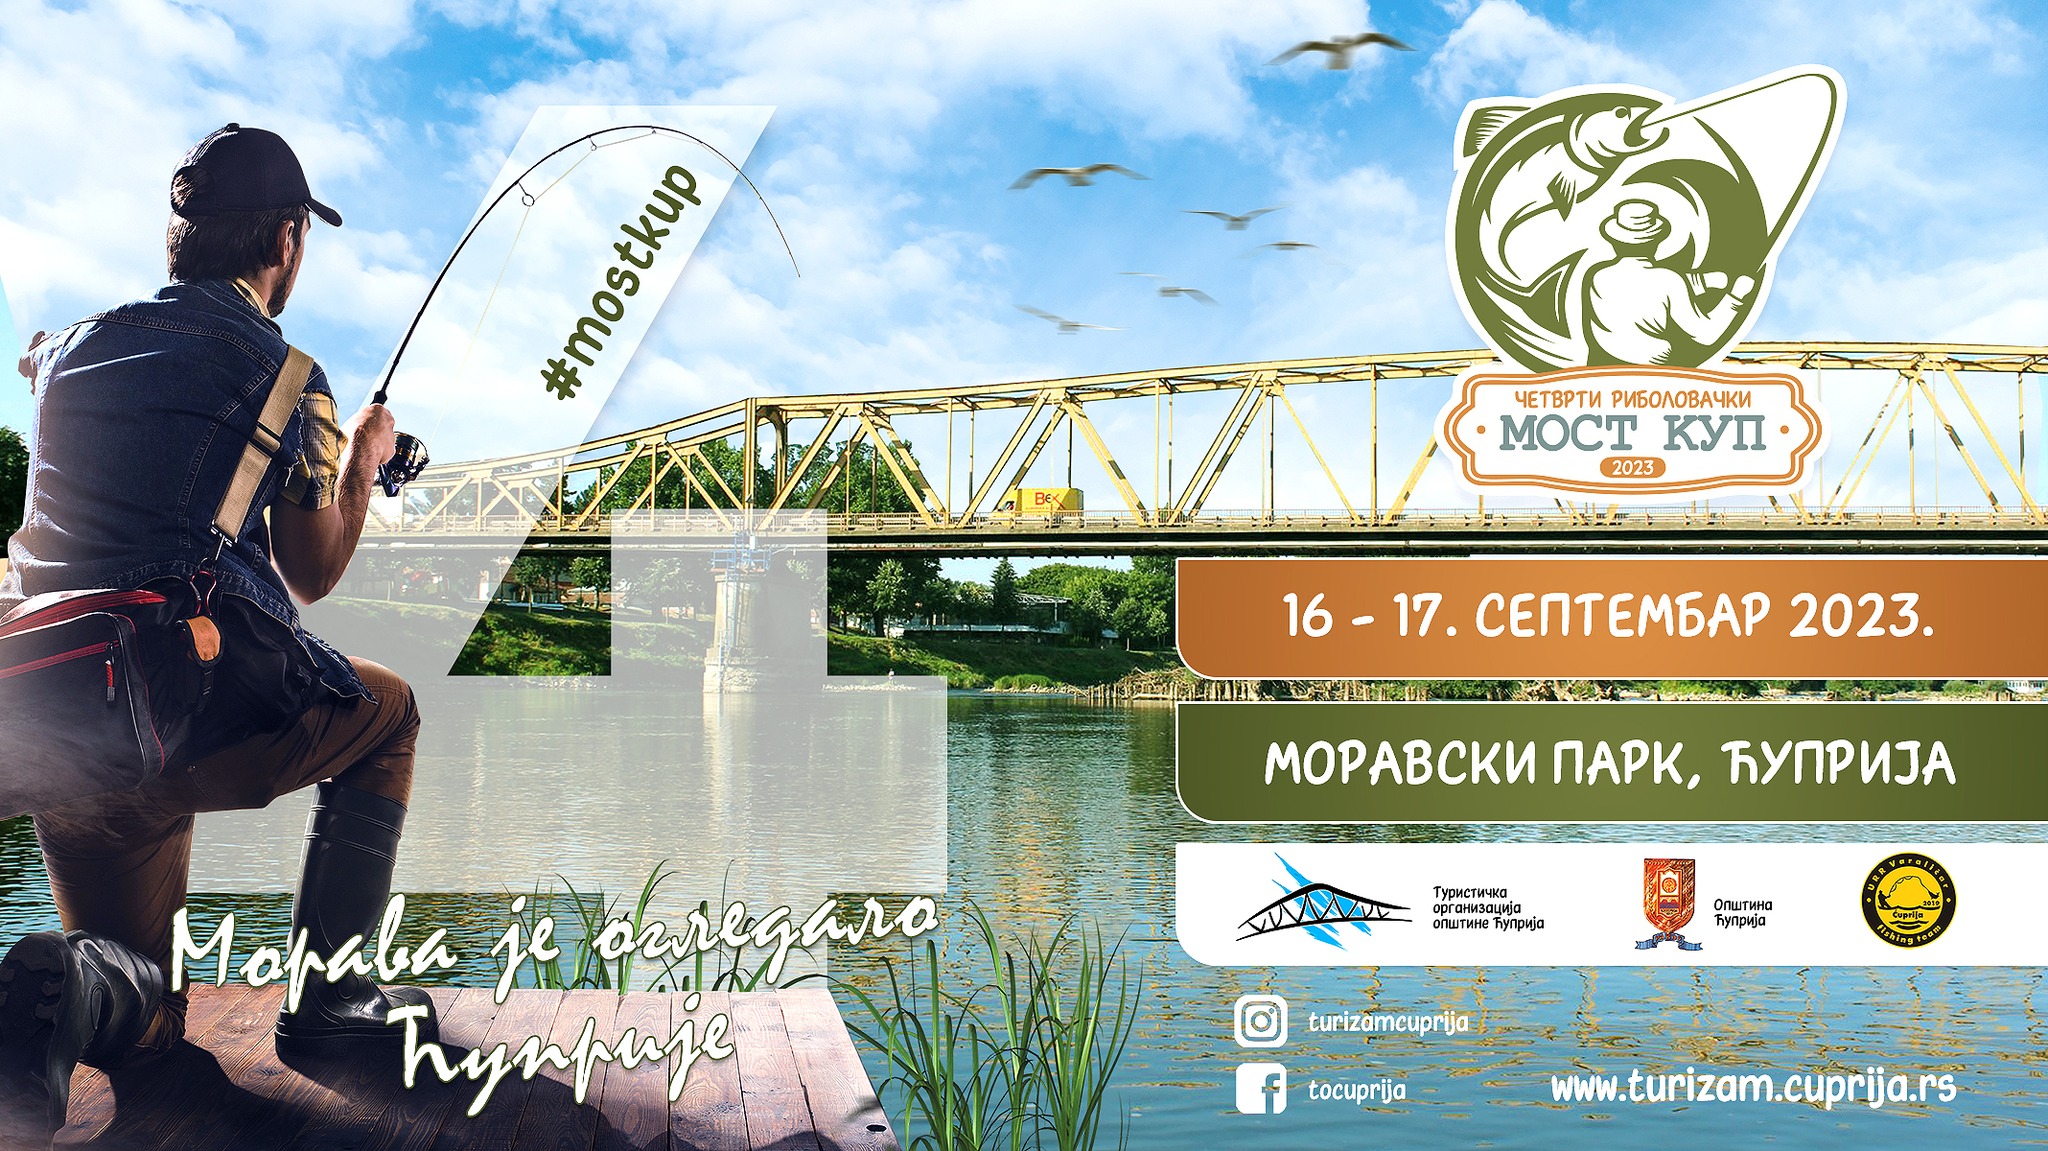 Polovinom septembra ribolovačko takmičenje Most Kup u Ćupriji